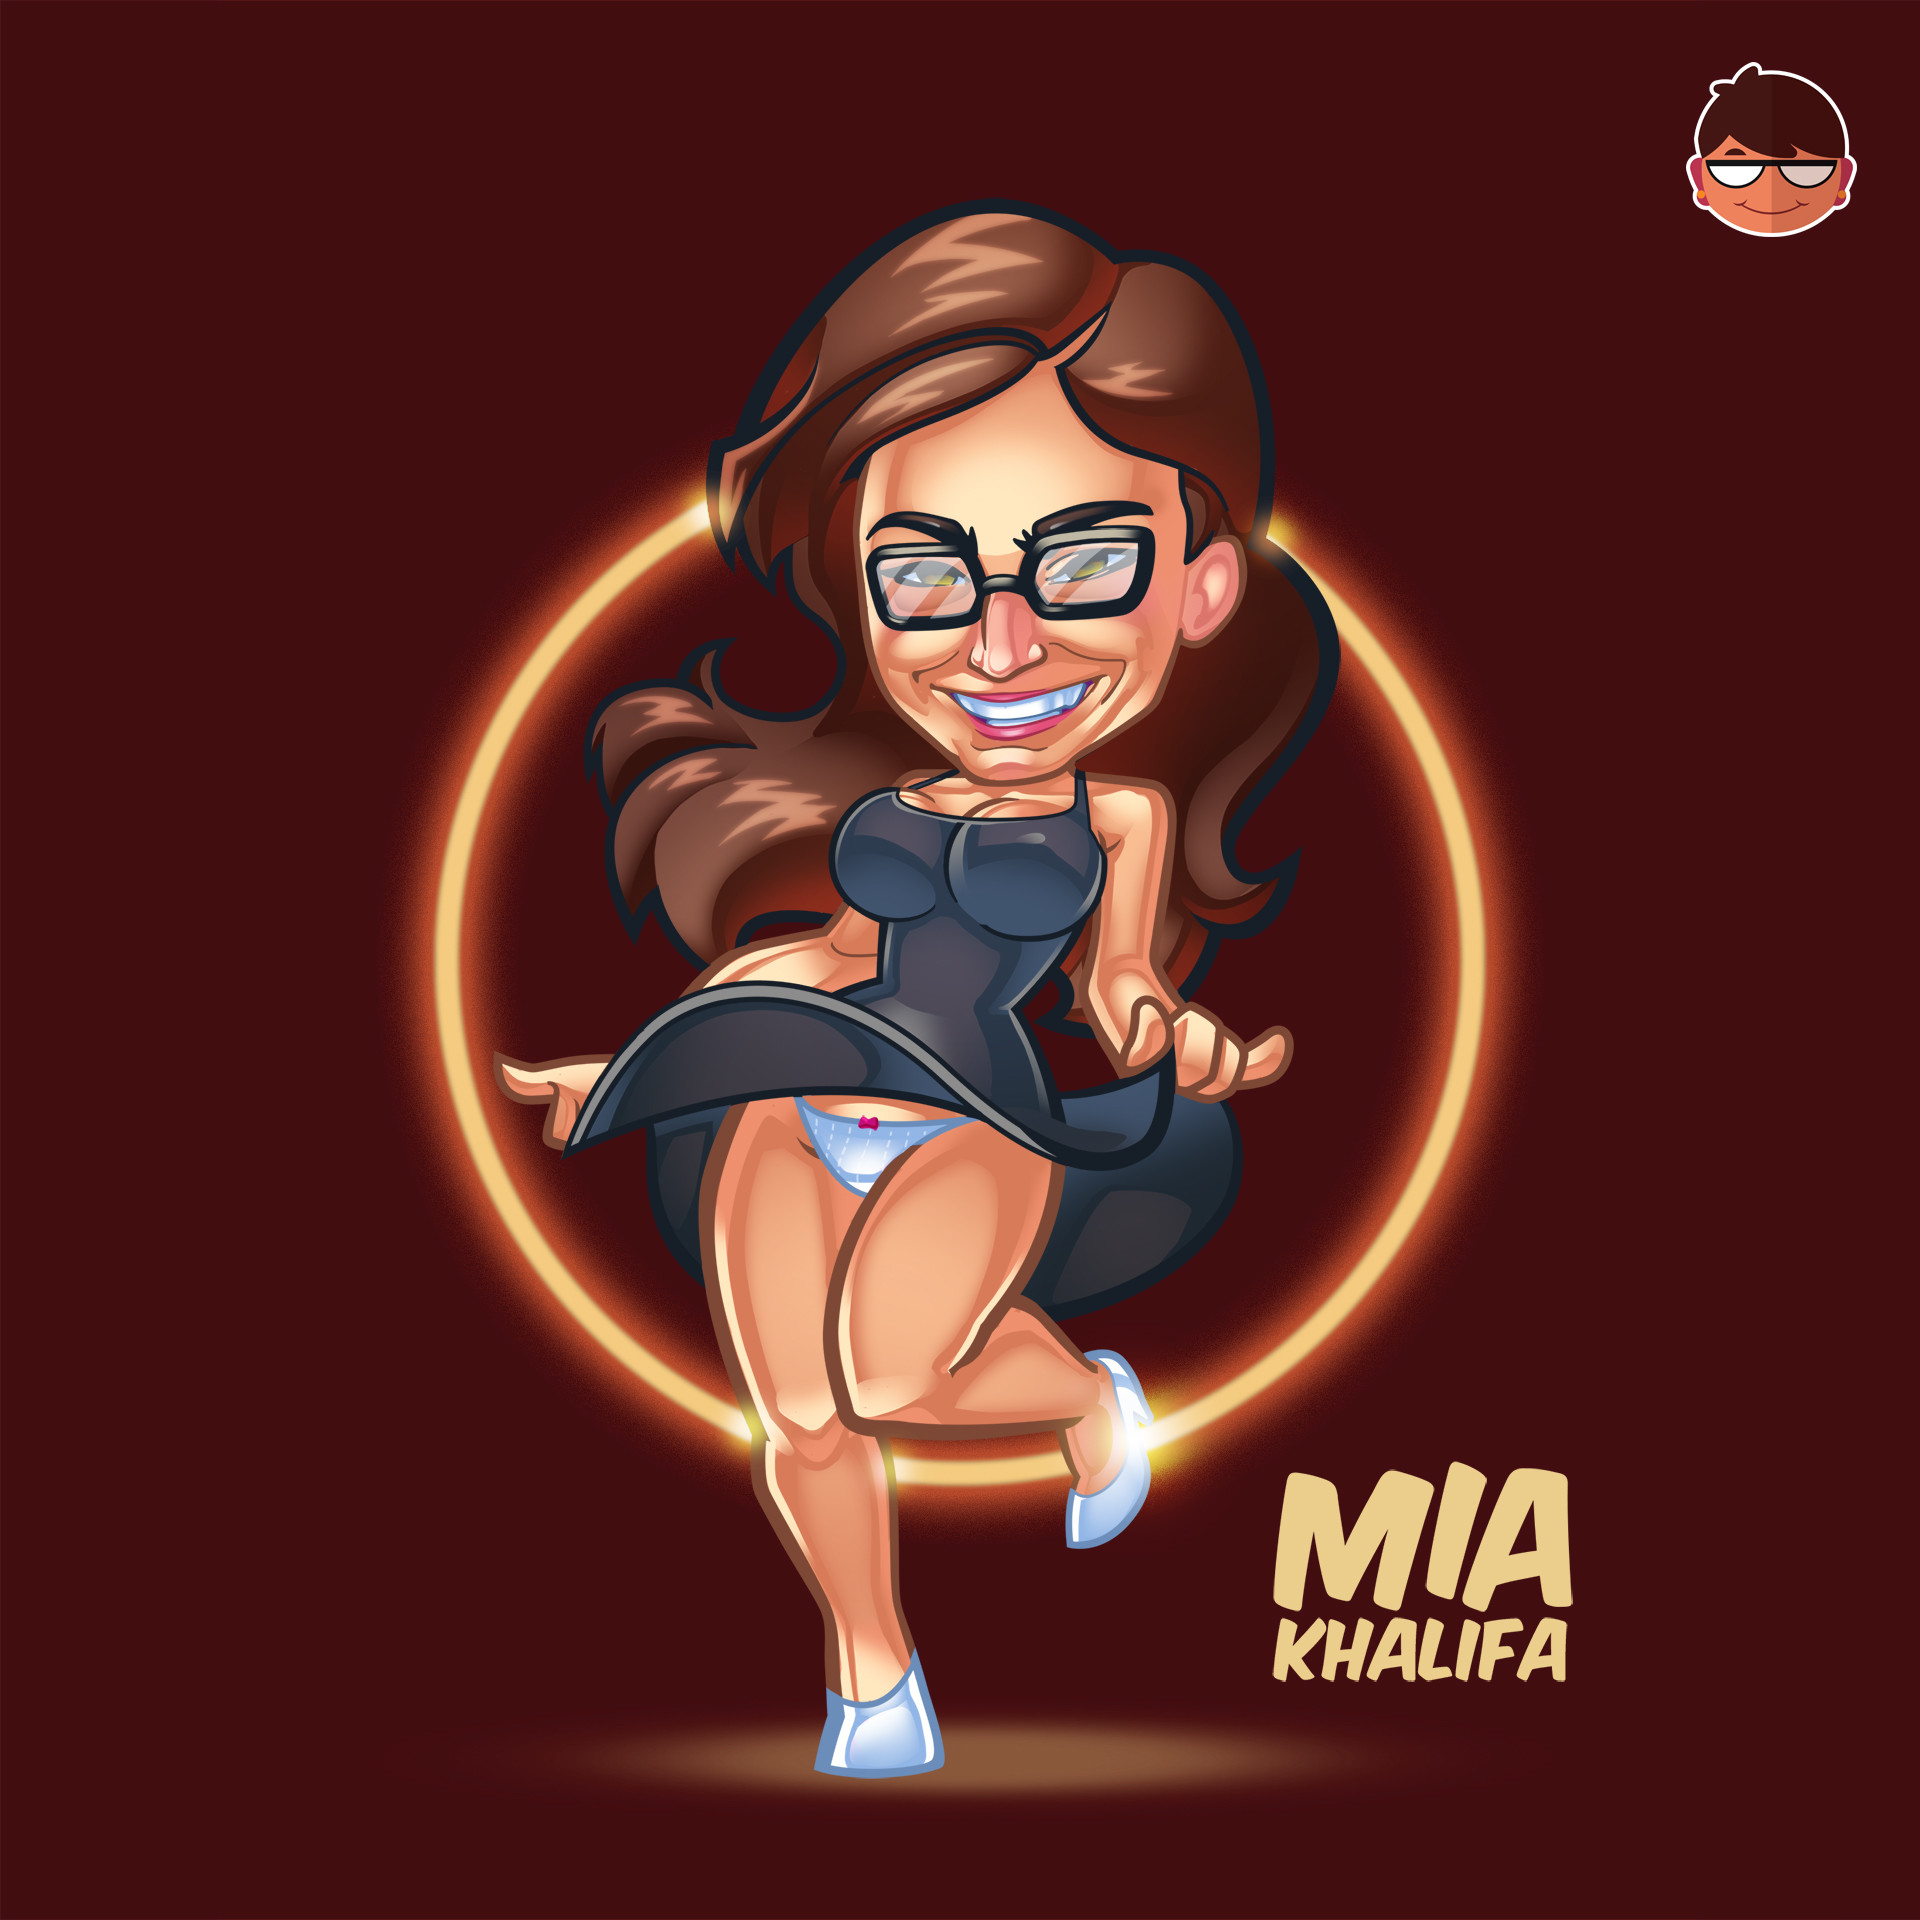 Check out my Mia Khalifa fan art illustration